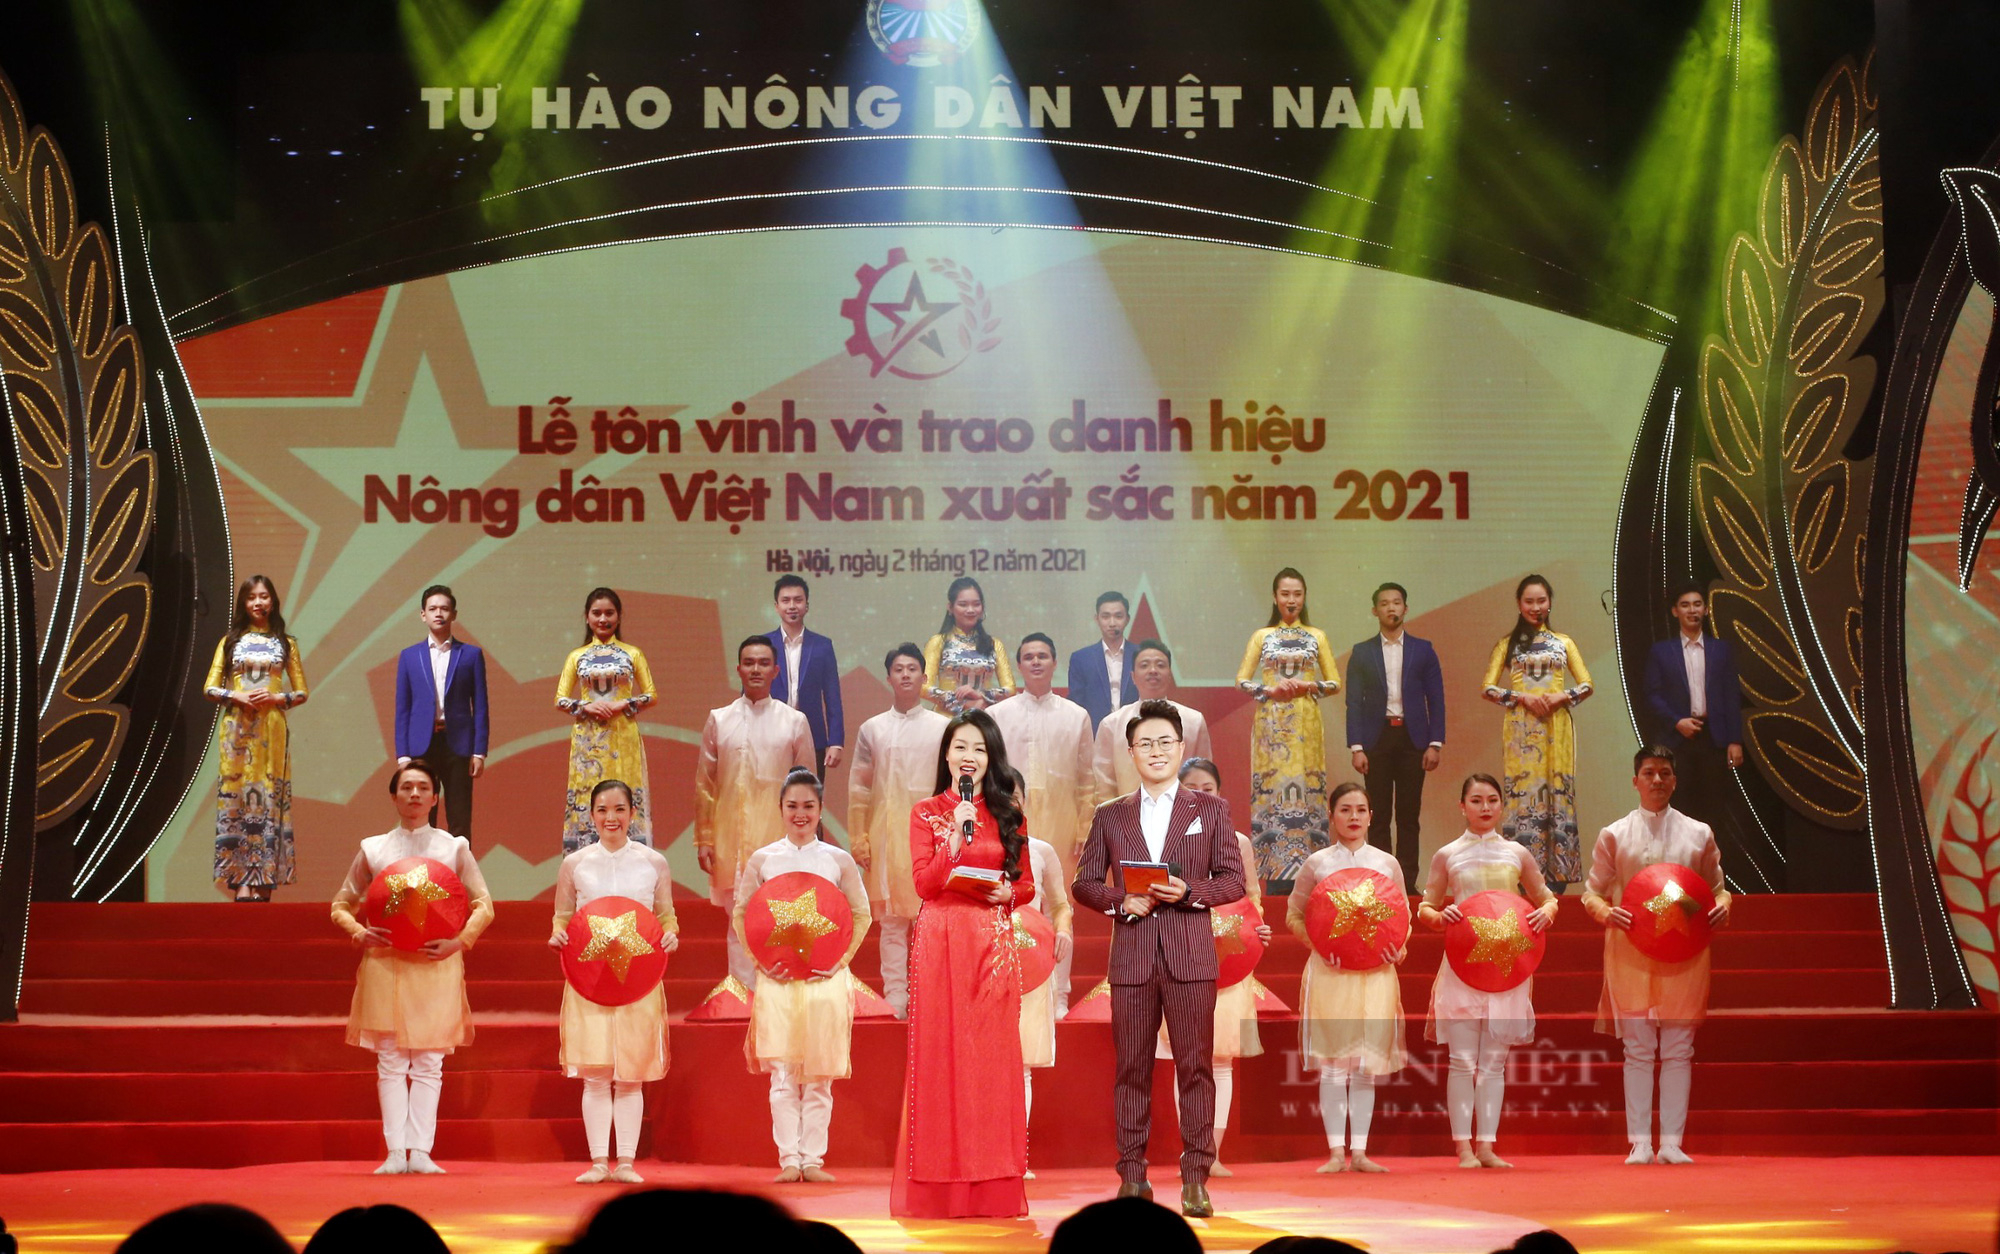 Toàn cảnh đêm Tôn vinh 63 nông dân Việt Nam xuất sắc năm 2021 - Ảnh 6.